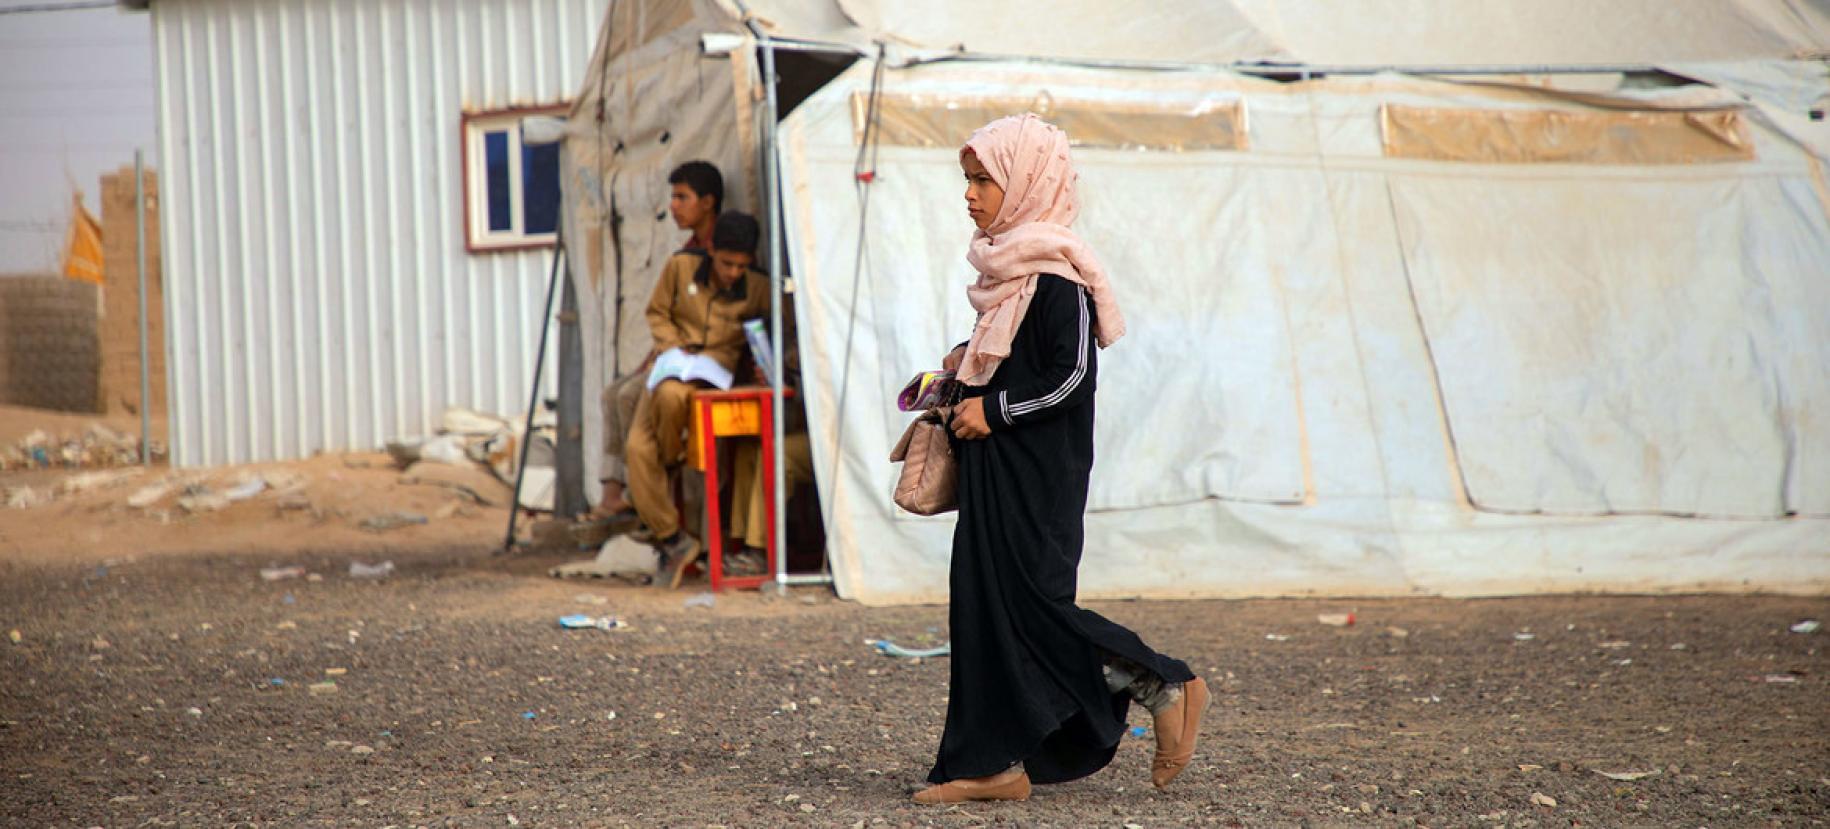 Une jeune fille yéménite vêtue de noir et portant un voile de couleur rose clair sur la tête se déplace dans un camp de réfugiés et passe devant une tente de couleur beige.